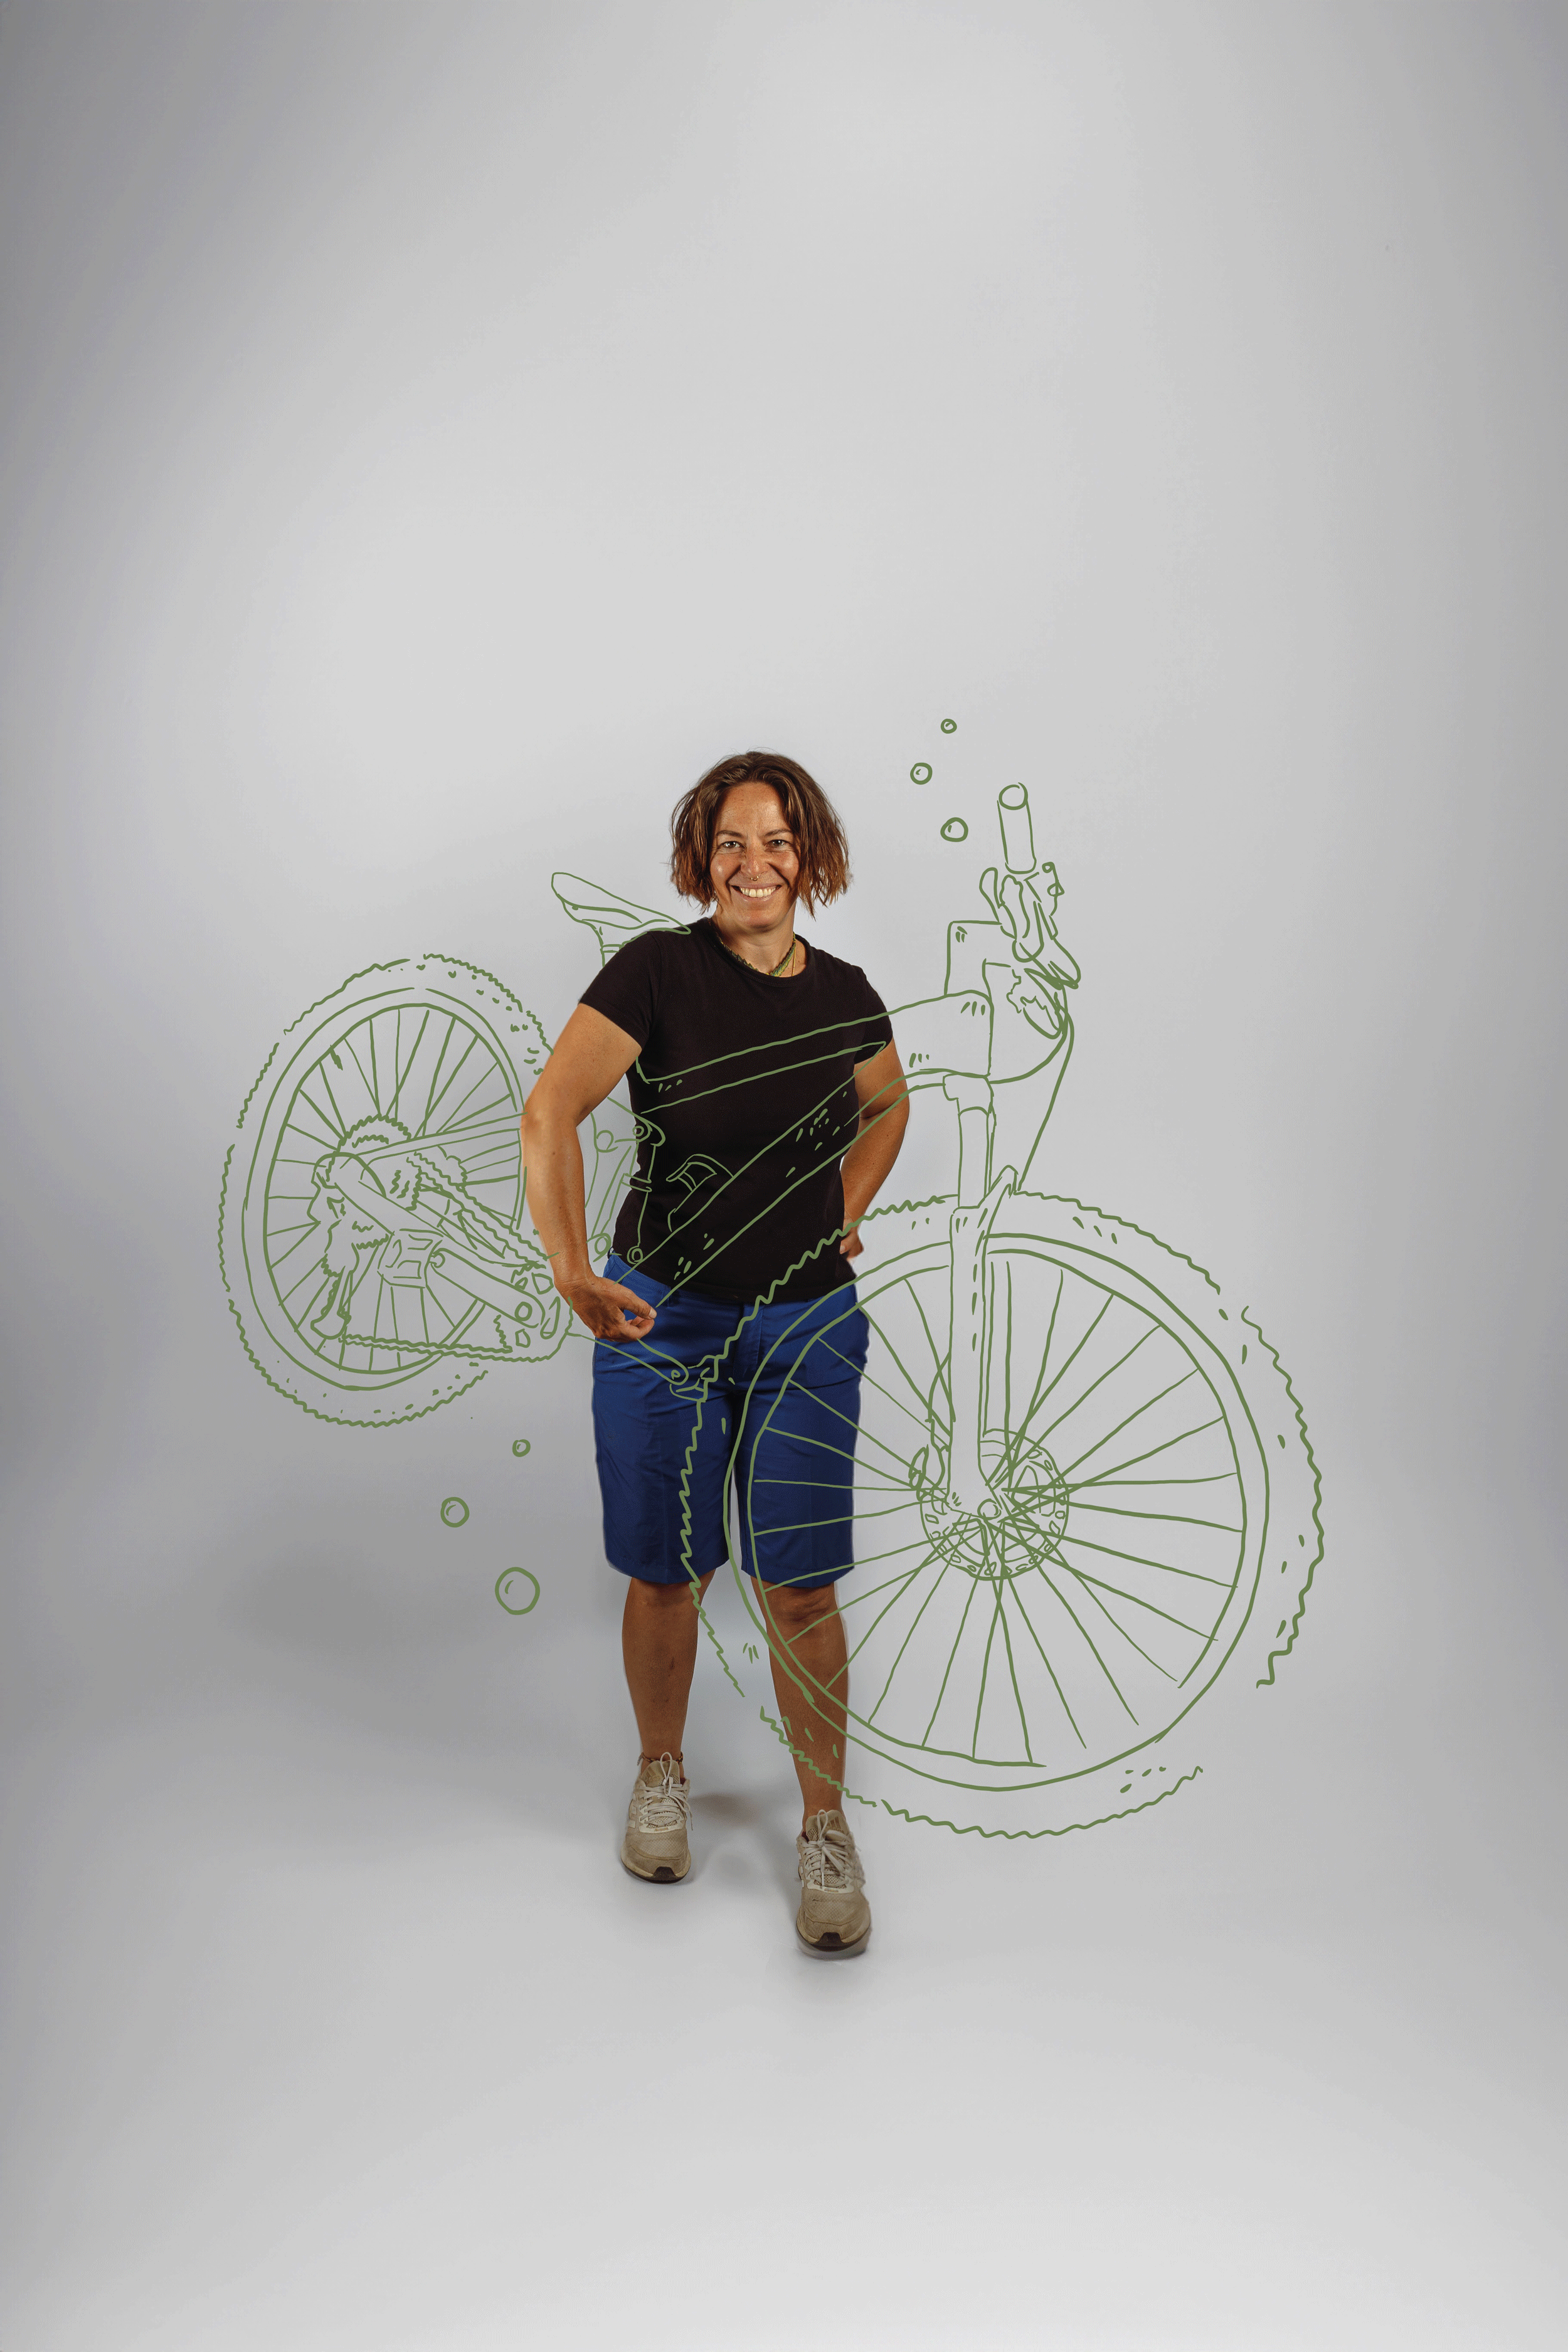 Diana Marggraff
Bike Guide / Koordinator